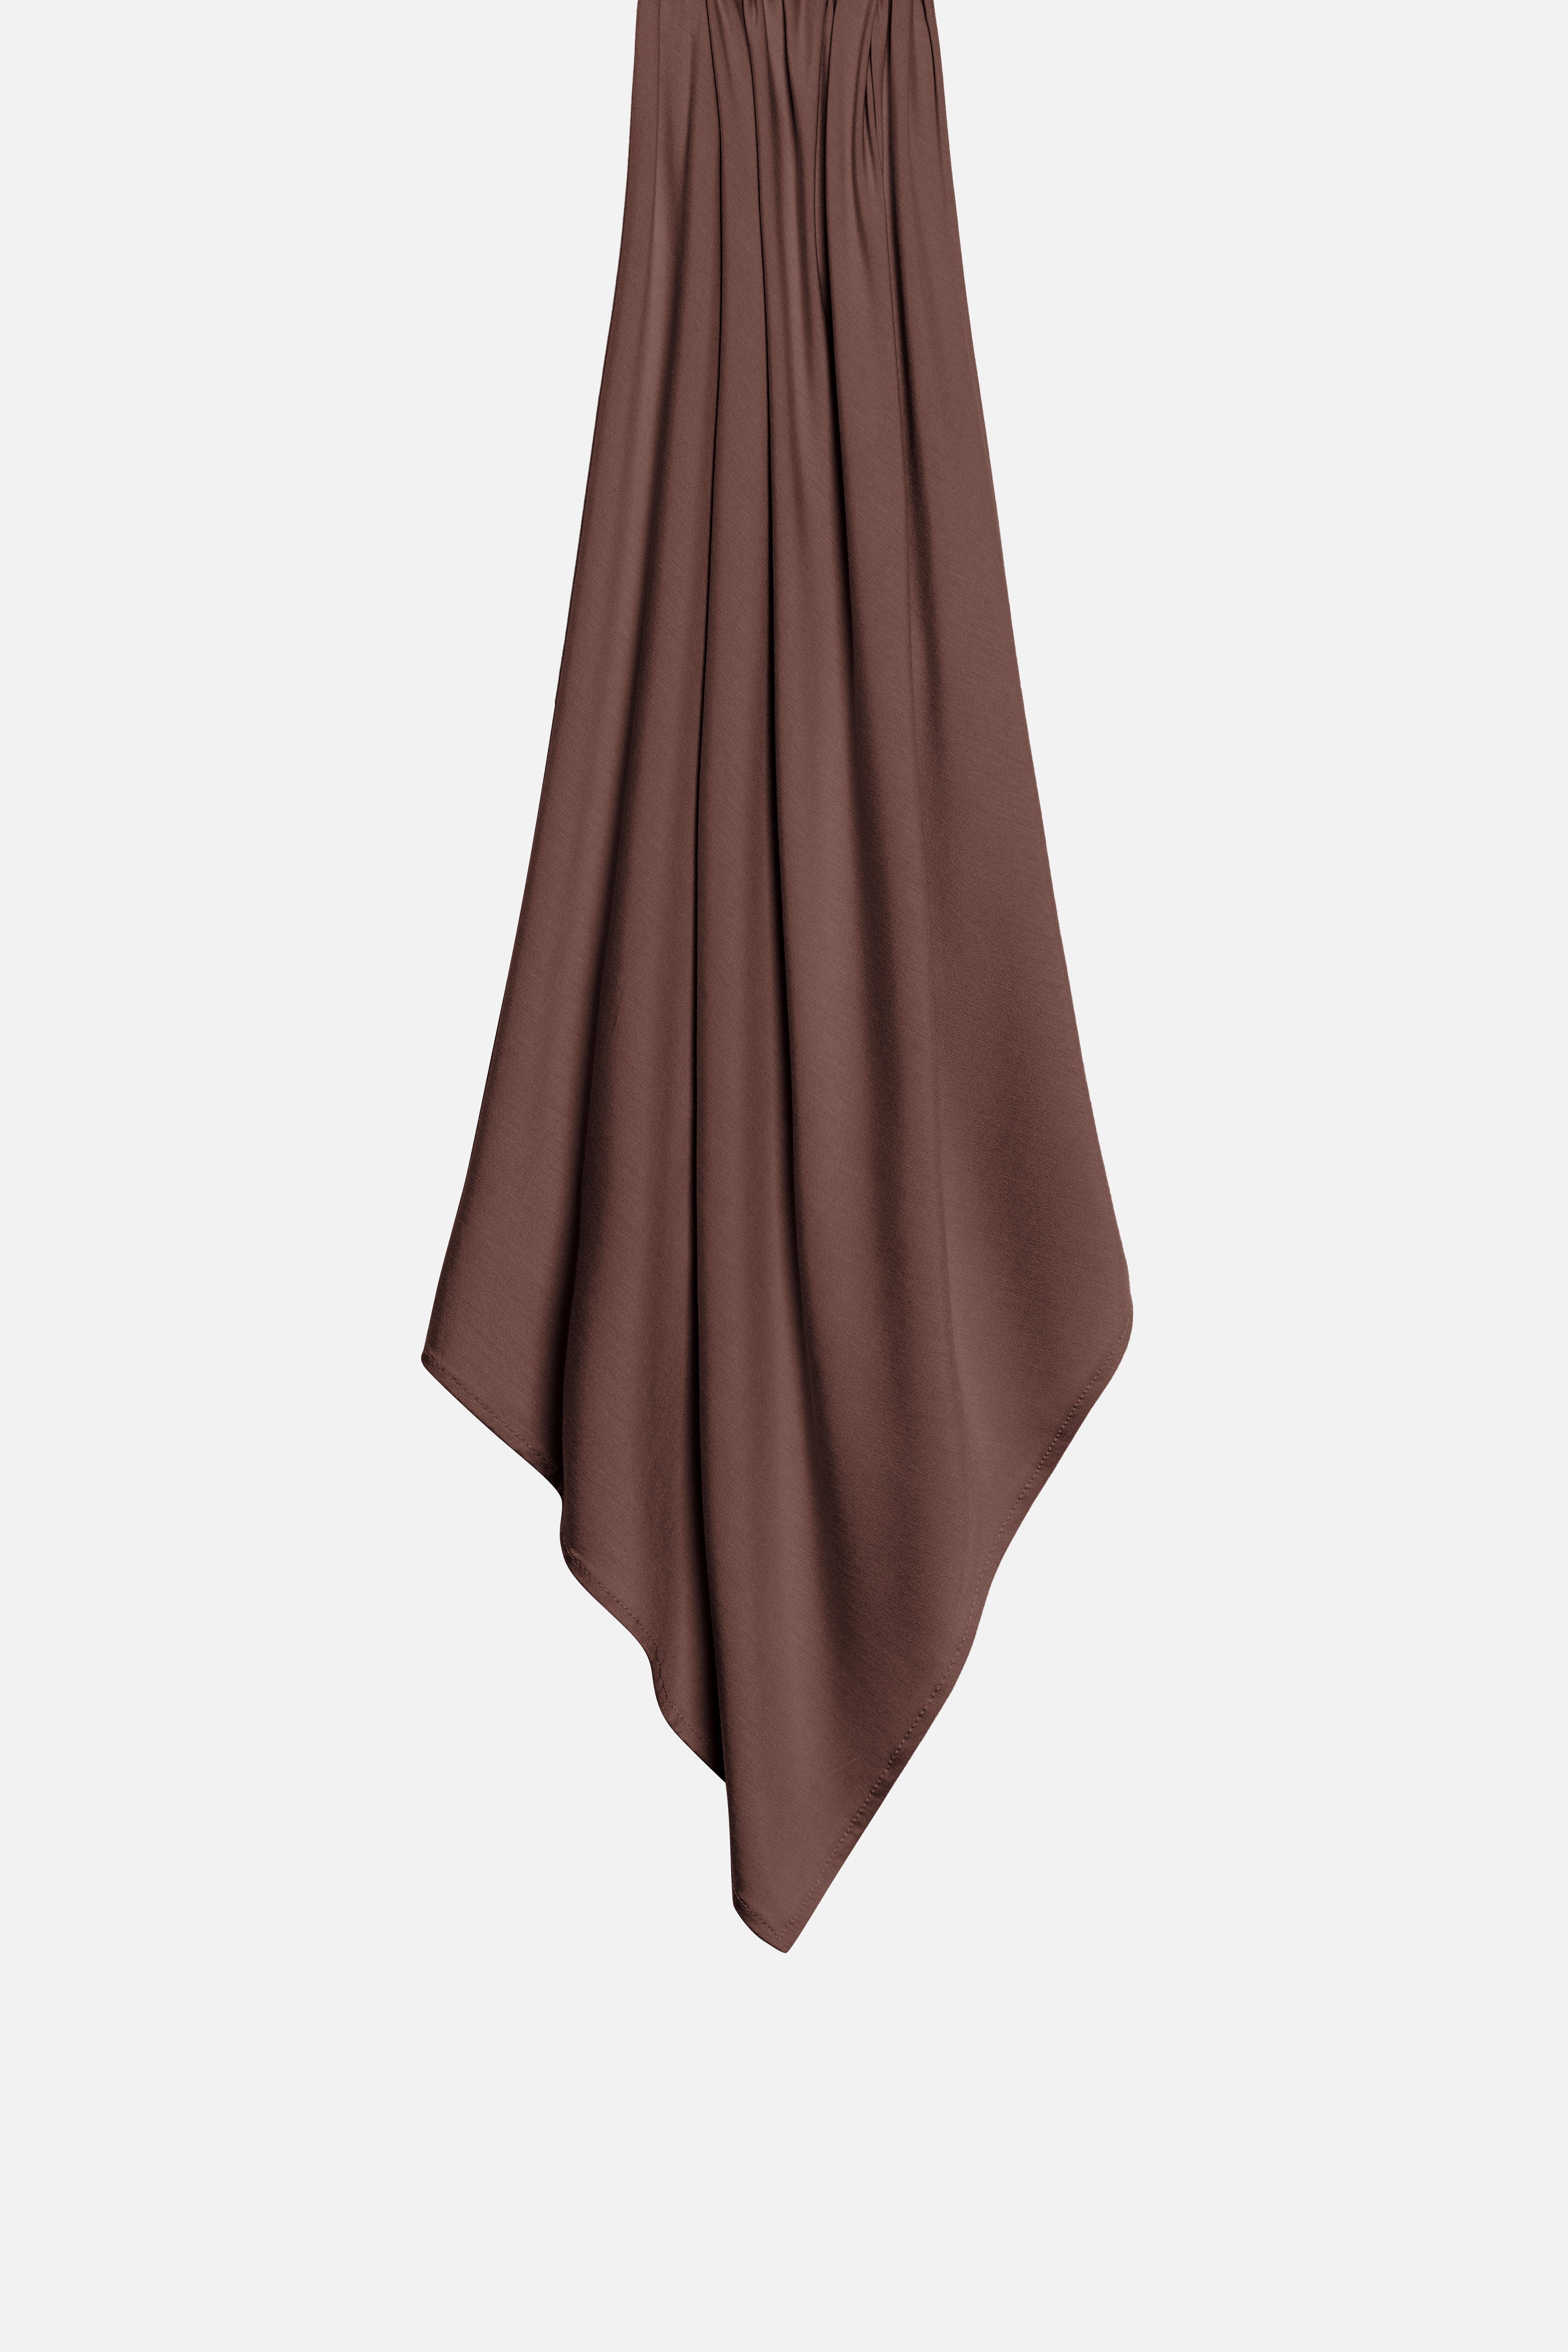 bamboe jersey hoofddoek in de kleur chocolate